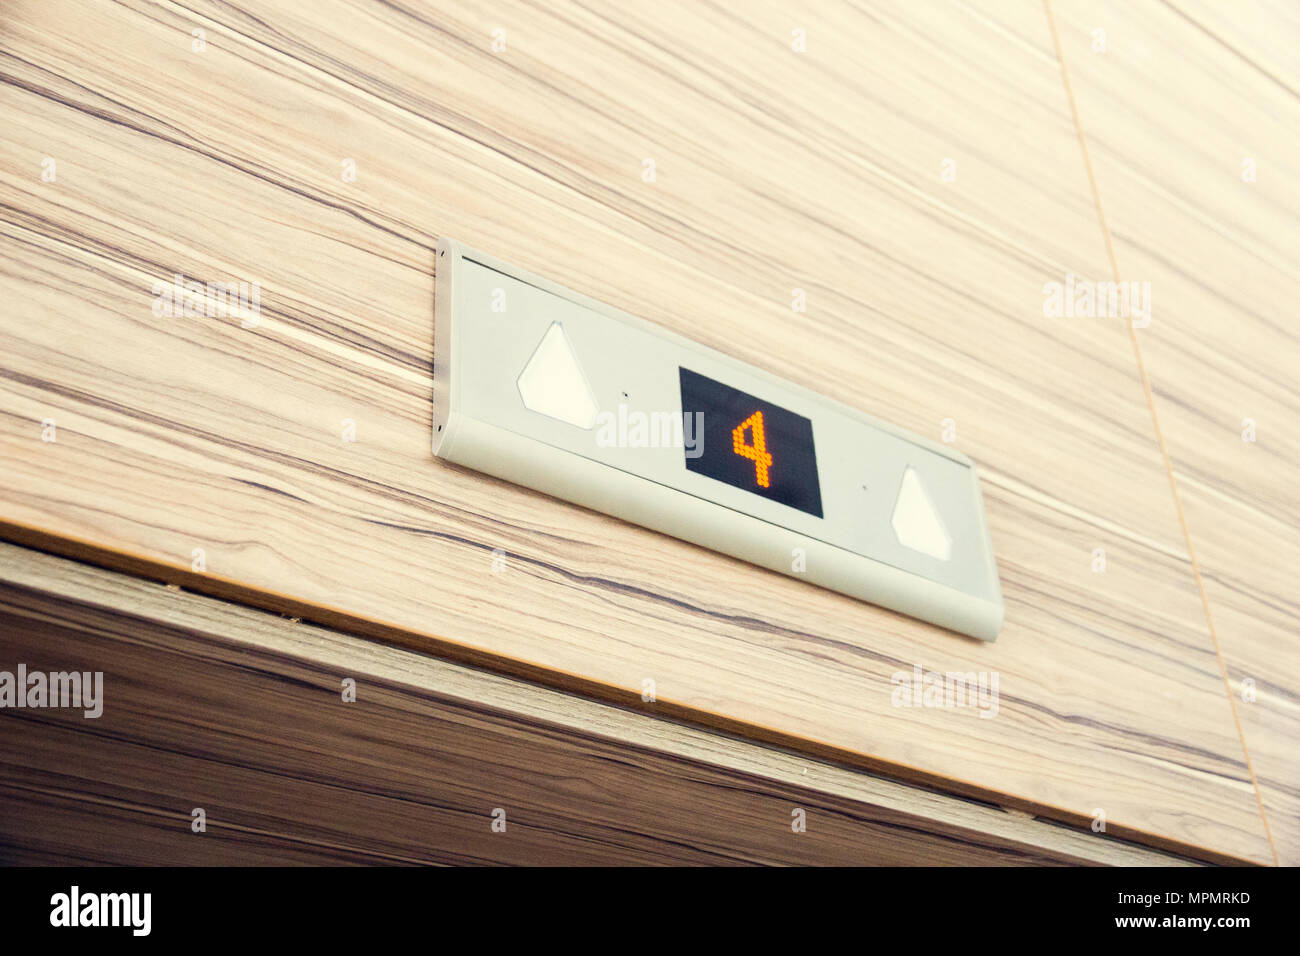 Oben Aufzugstür elektronische digitale Anzeige mit Nummer vier Stock Stockfoto